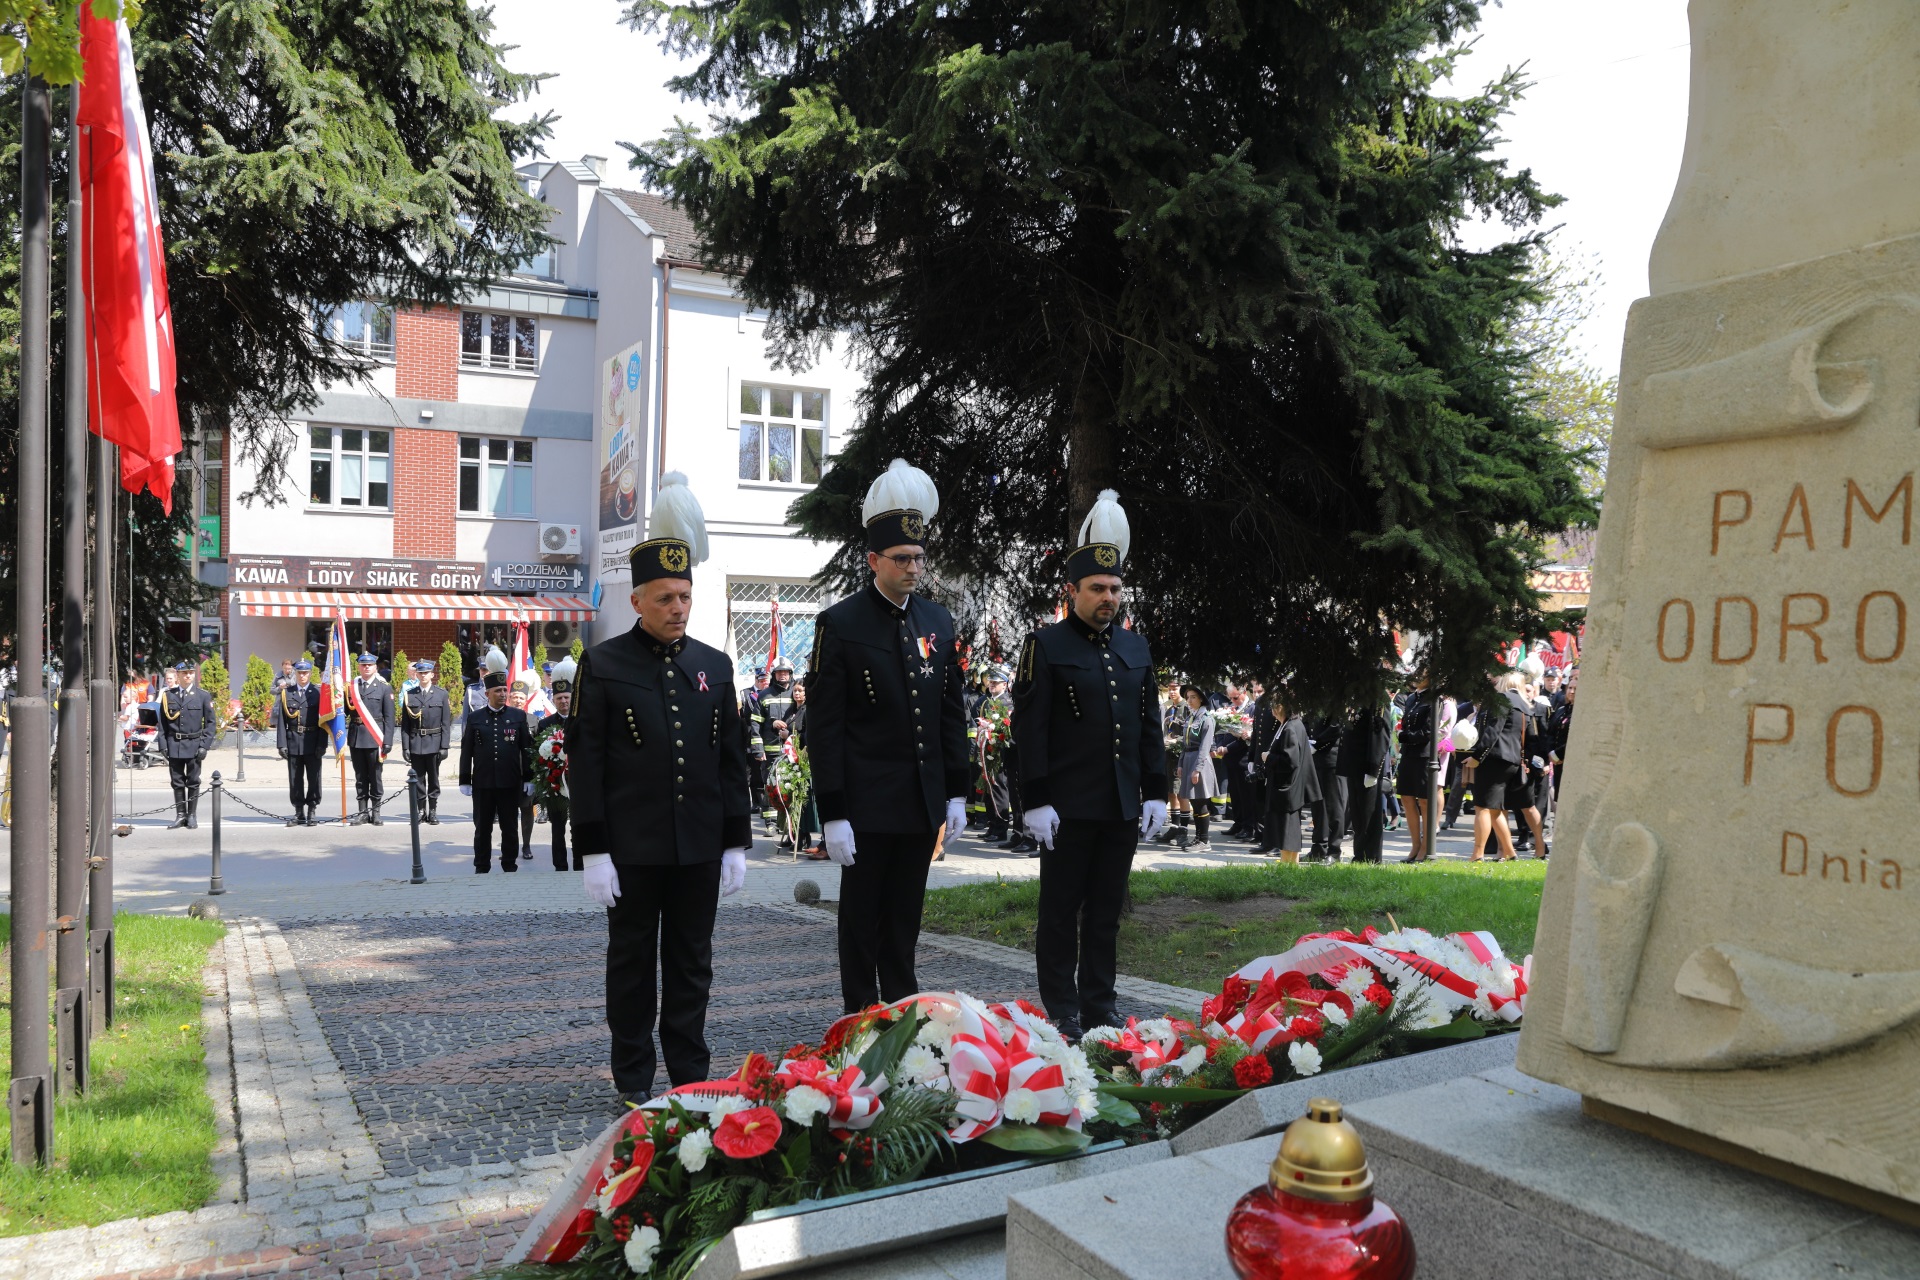 Górnicy w galowych mundurach przy pomniku oddają hołd wieliczanom poległym za wolność Polski